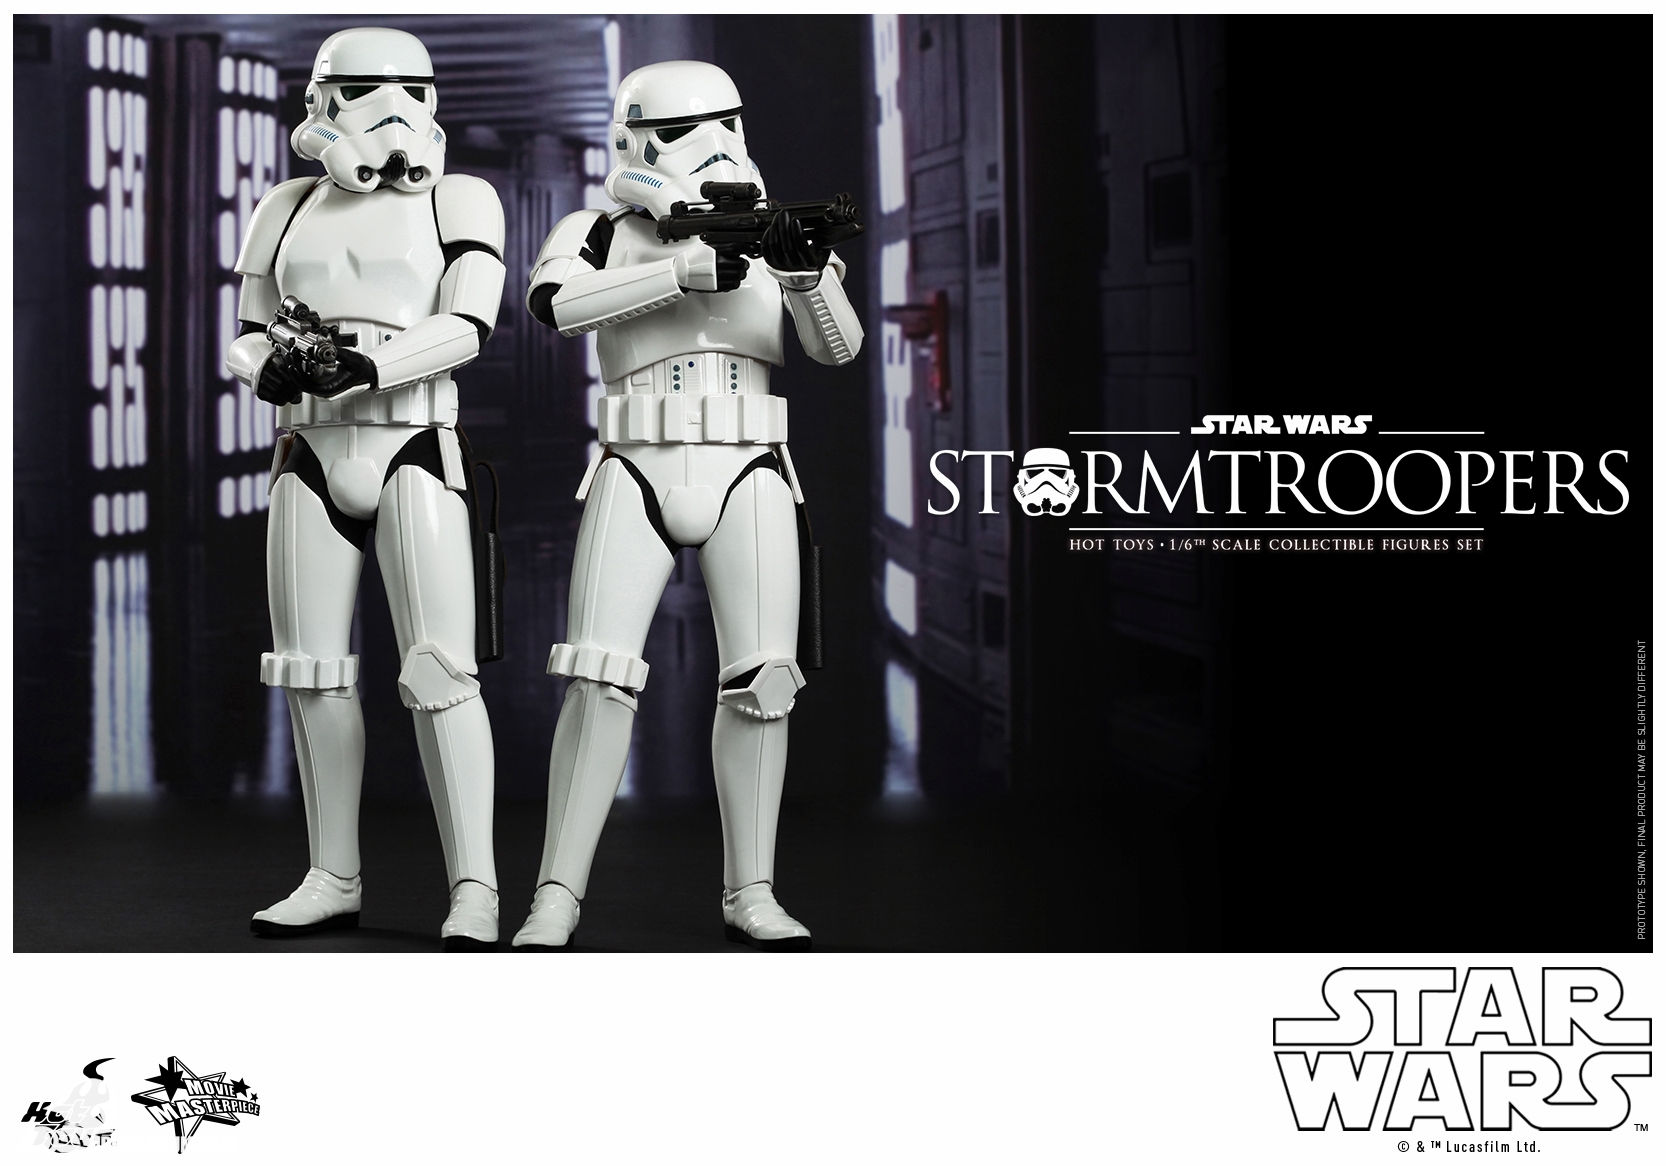 Hot-Toys-Movie-Masterpiece-Series-Star-Wars-Stormtroopers-003.jpg